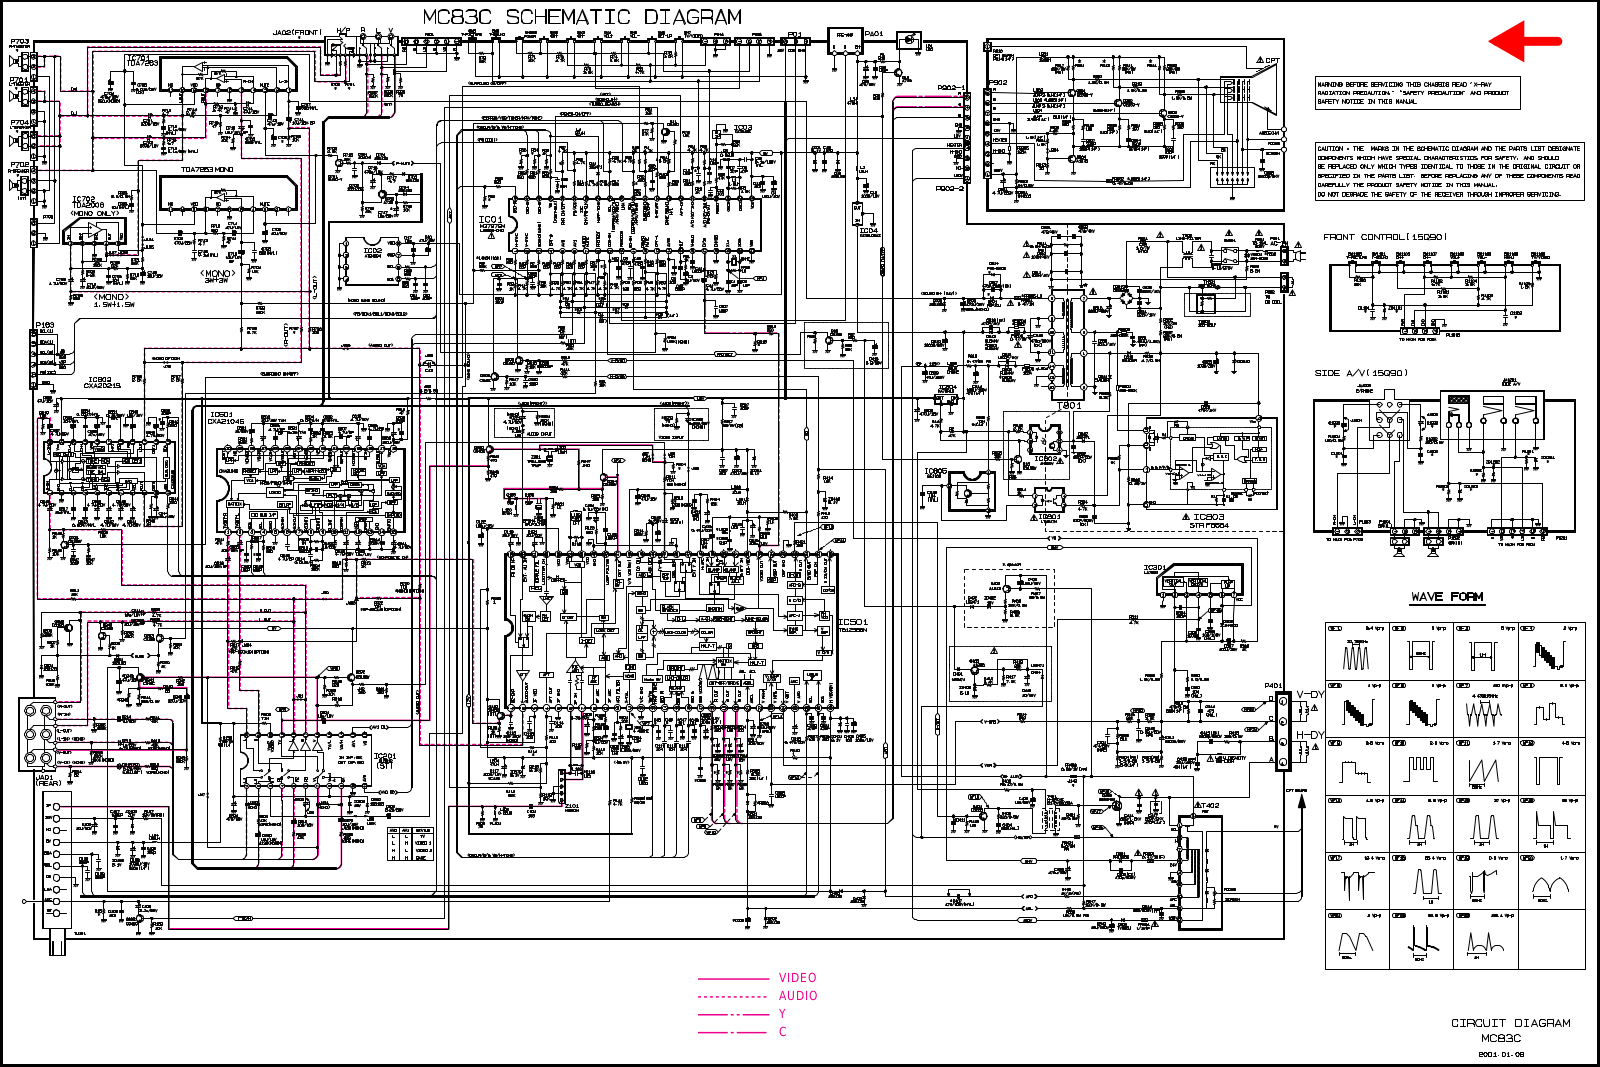 LG CP-20K78, MC83C Schematic